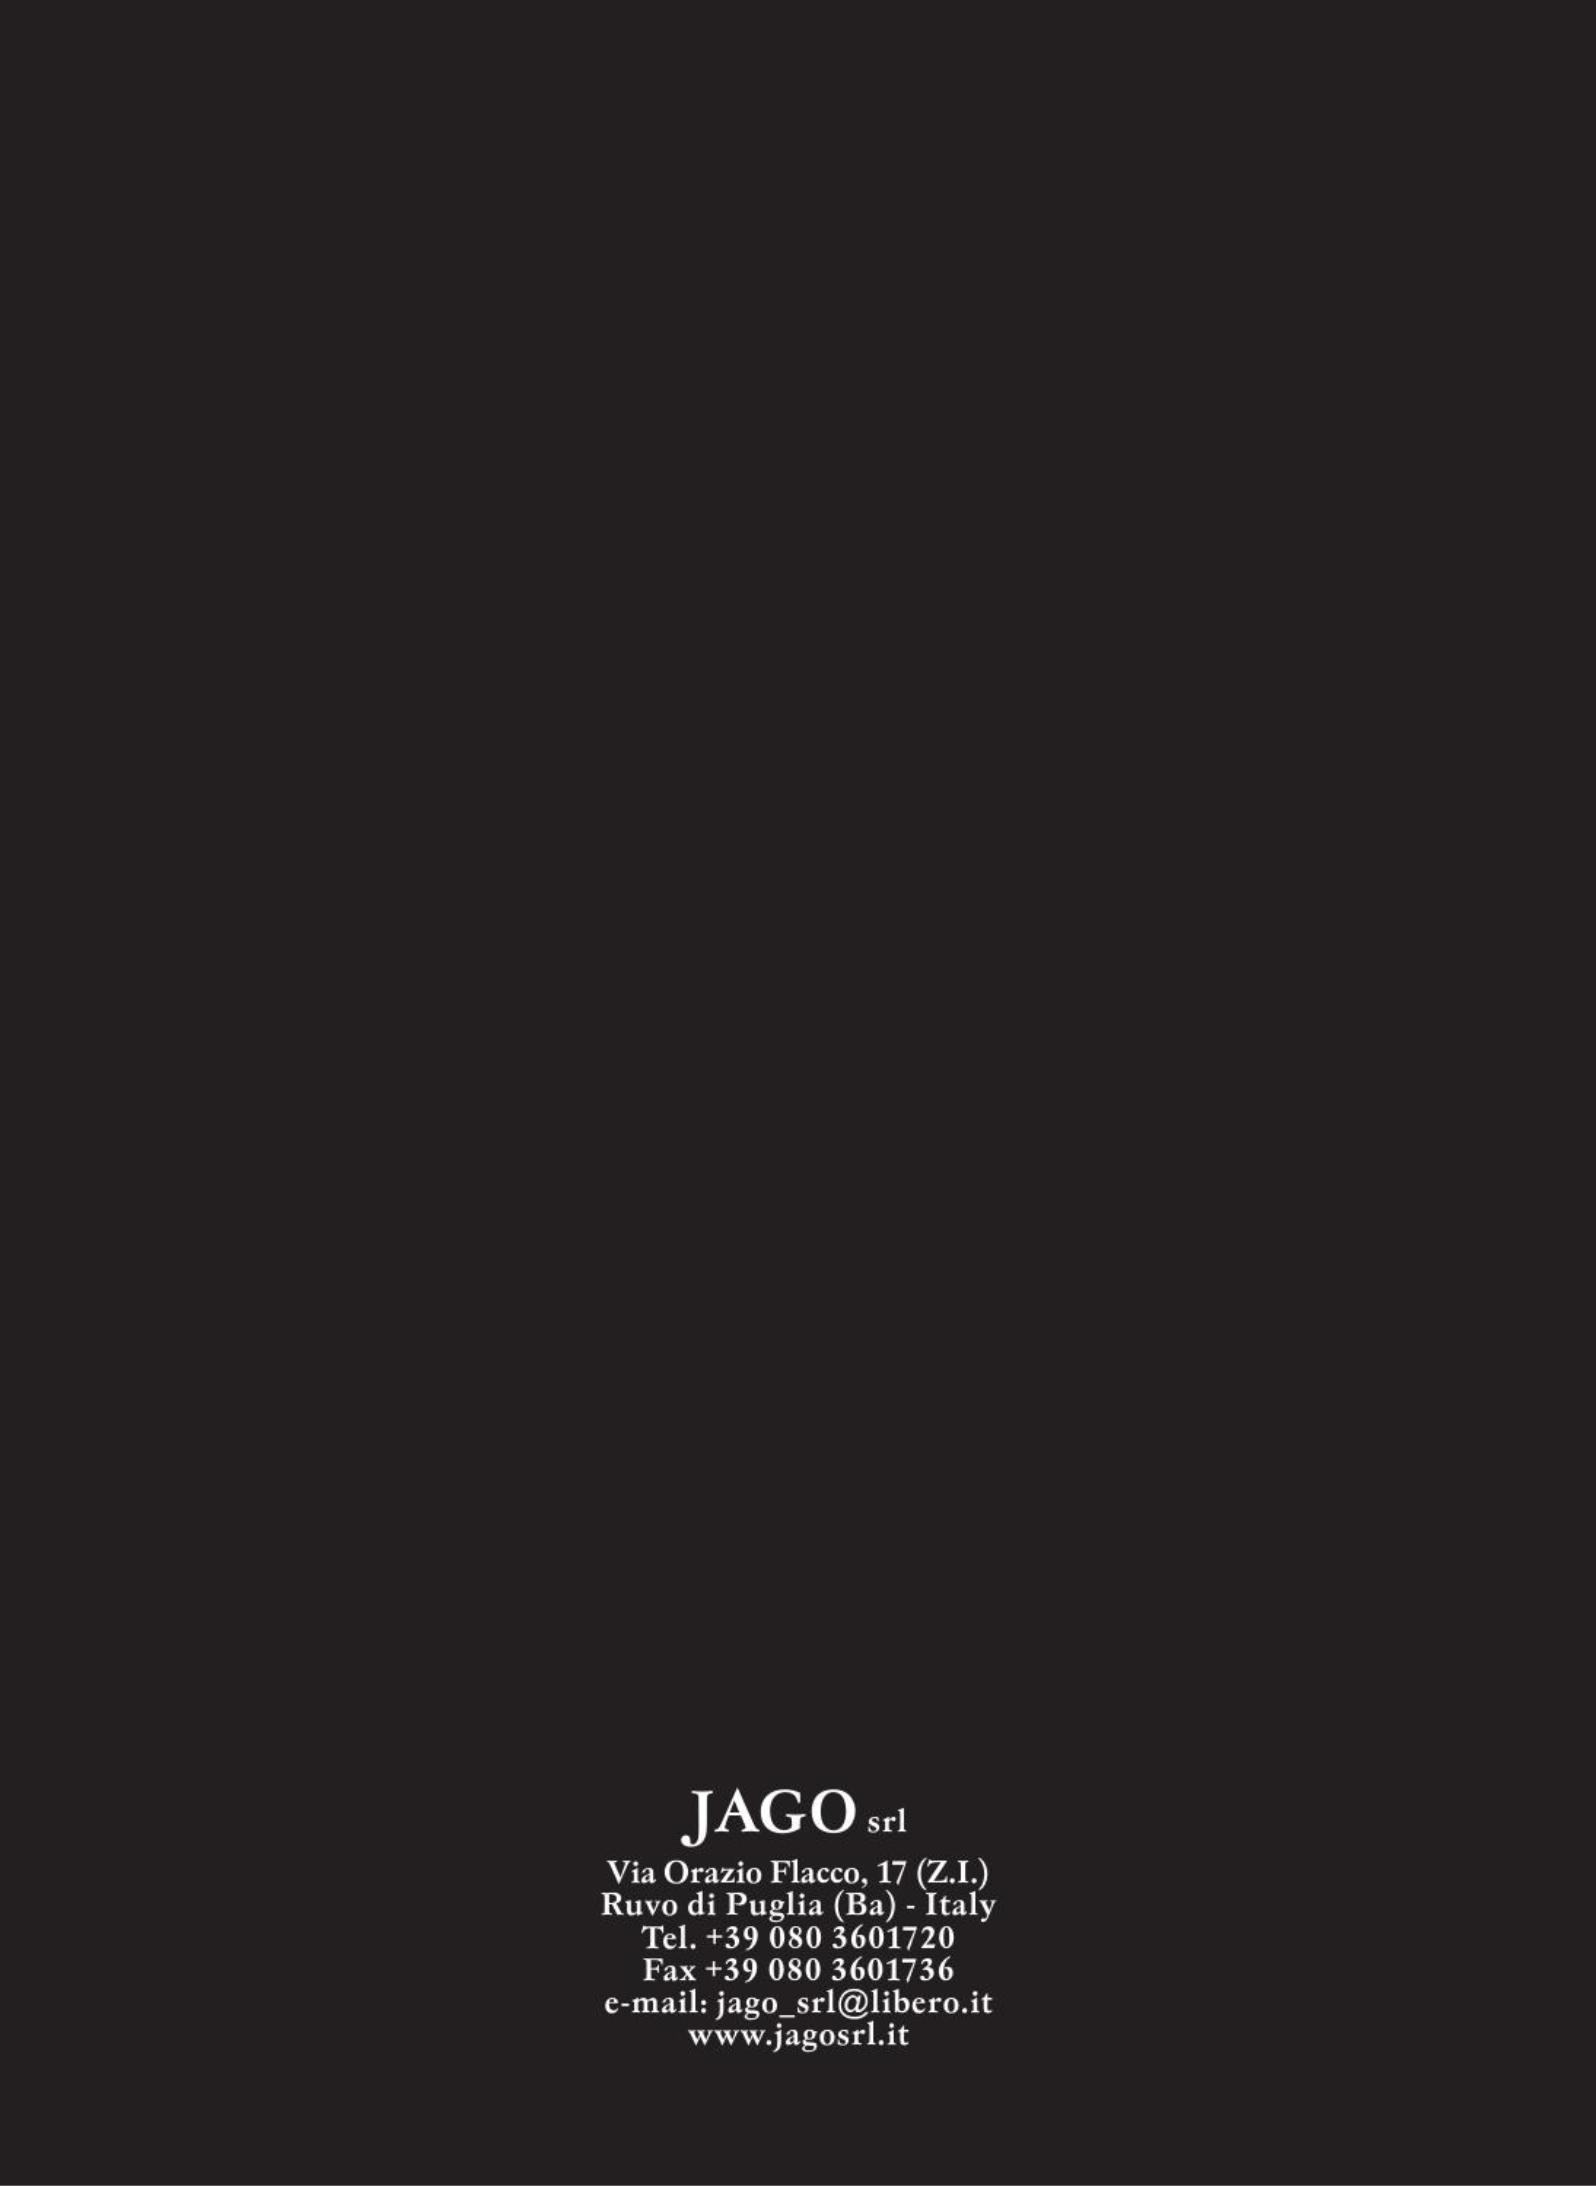 灯饰设计 Jago 2016年欧美最新水晶吊灯设计(图)